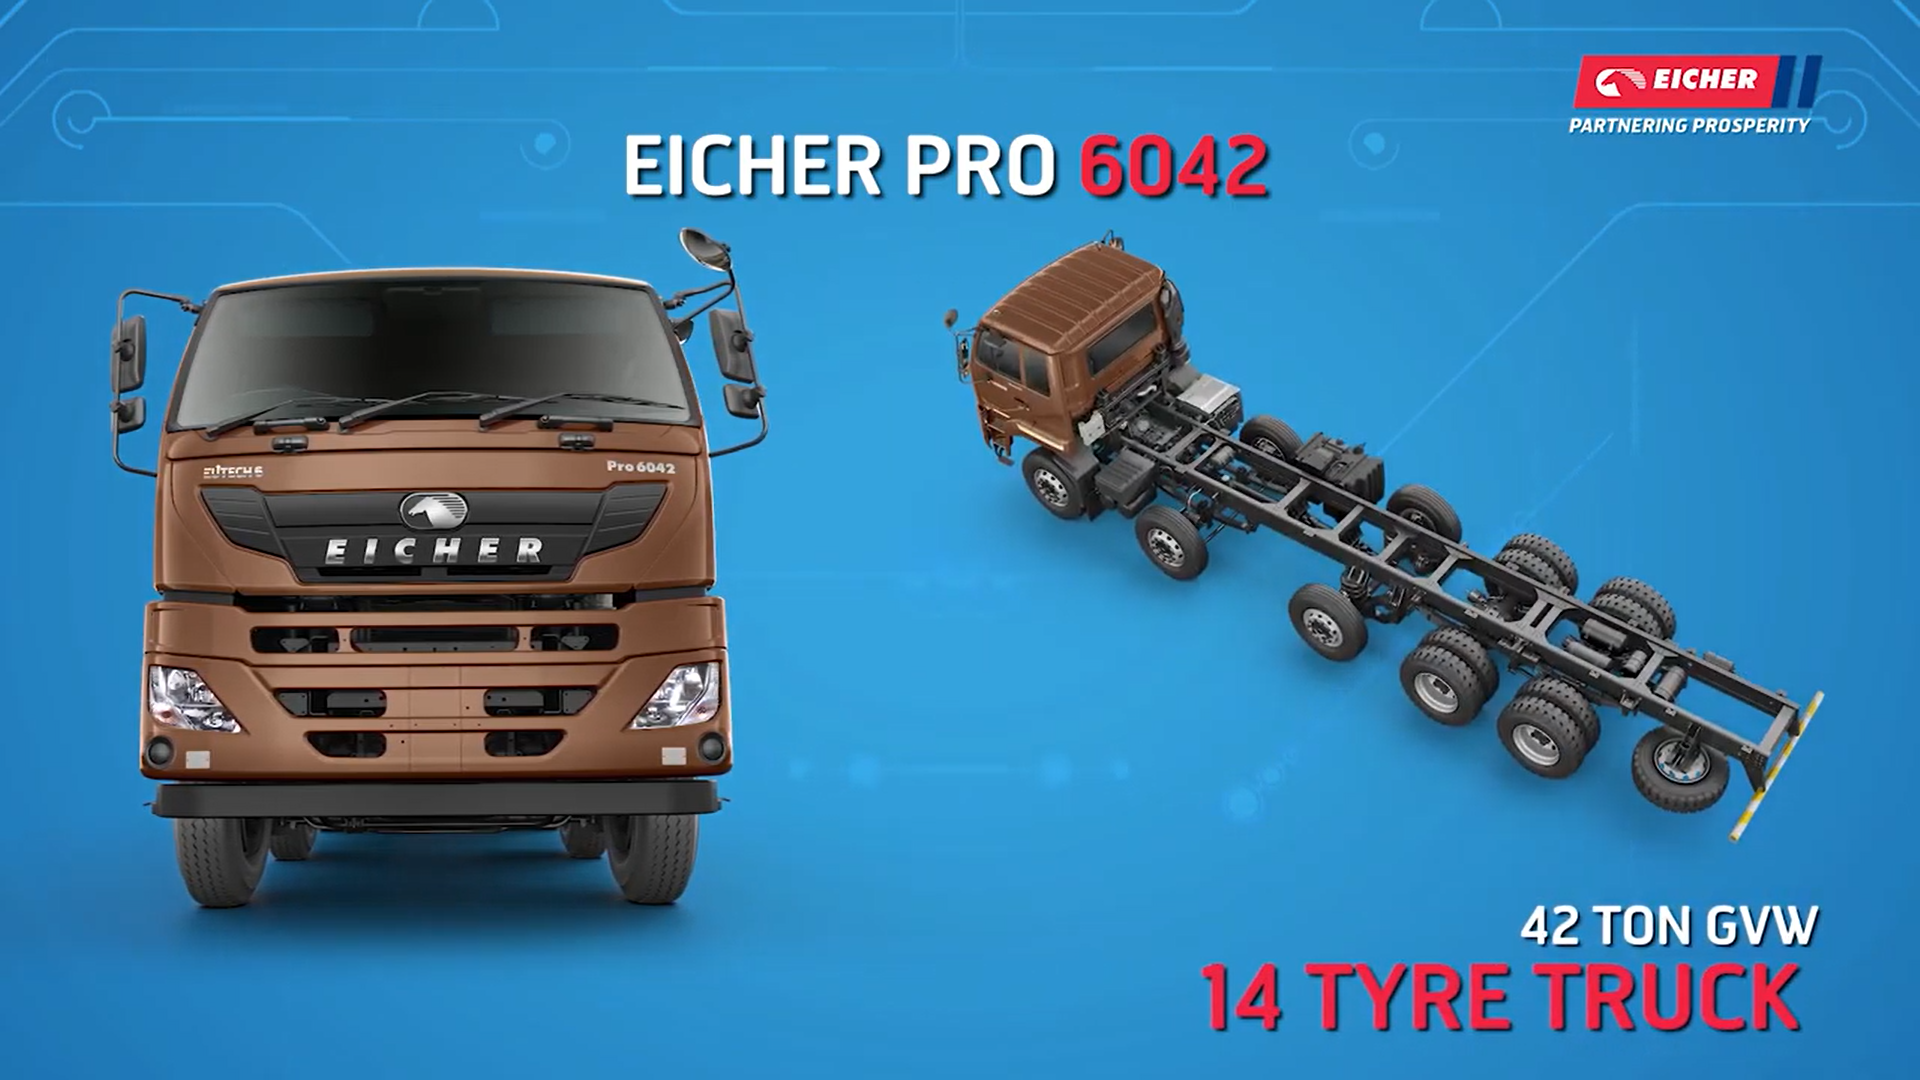 Know Your BSVI Vehicle - Eicher Pro 6042